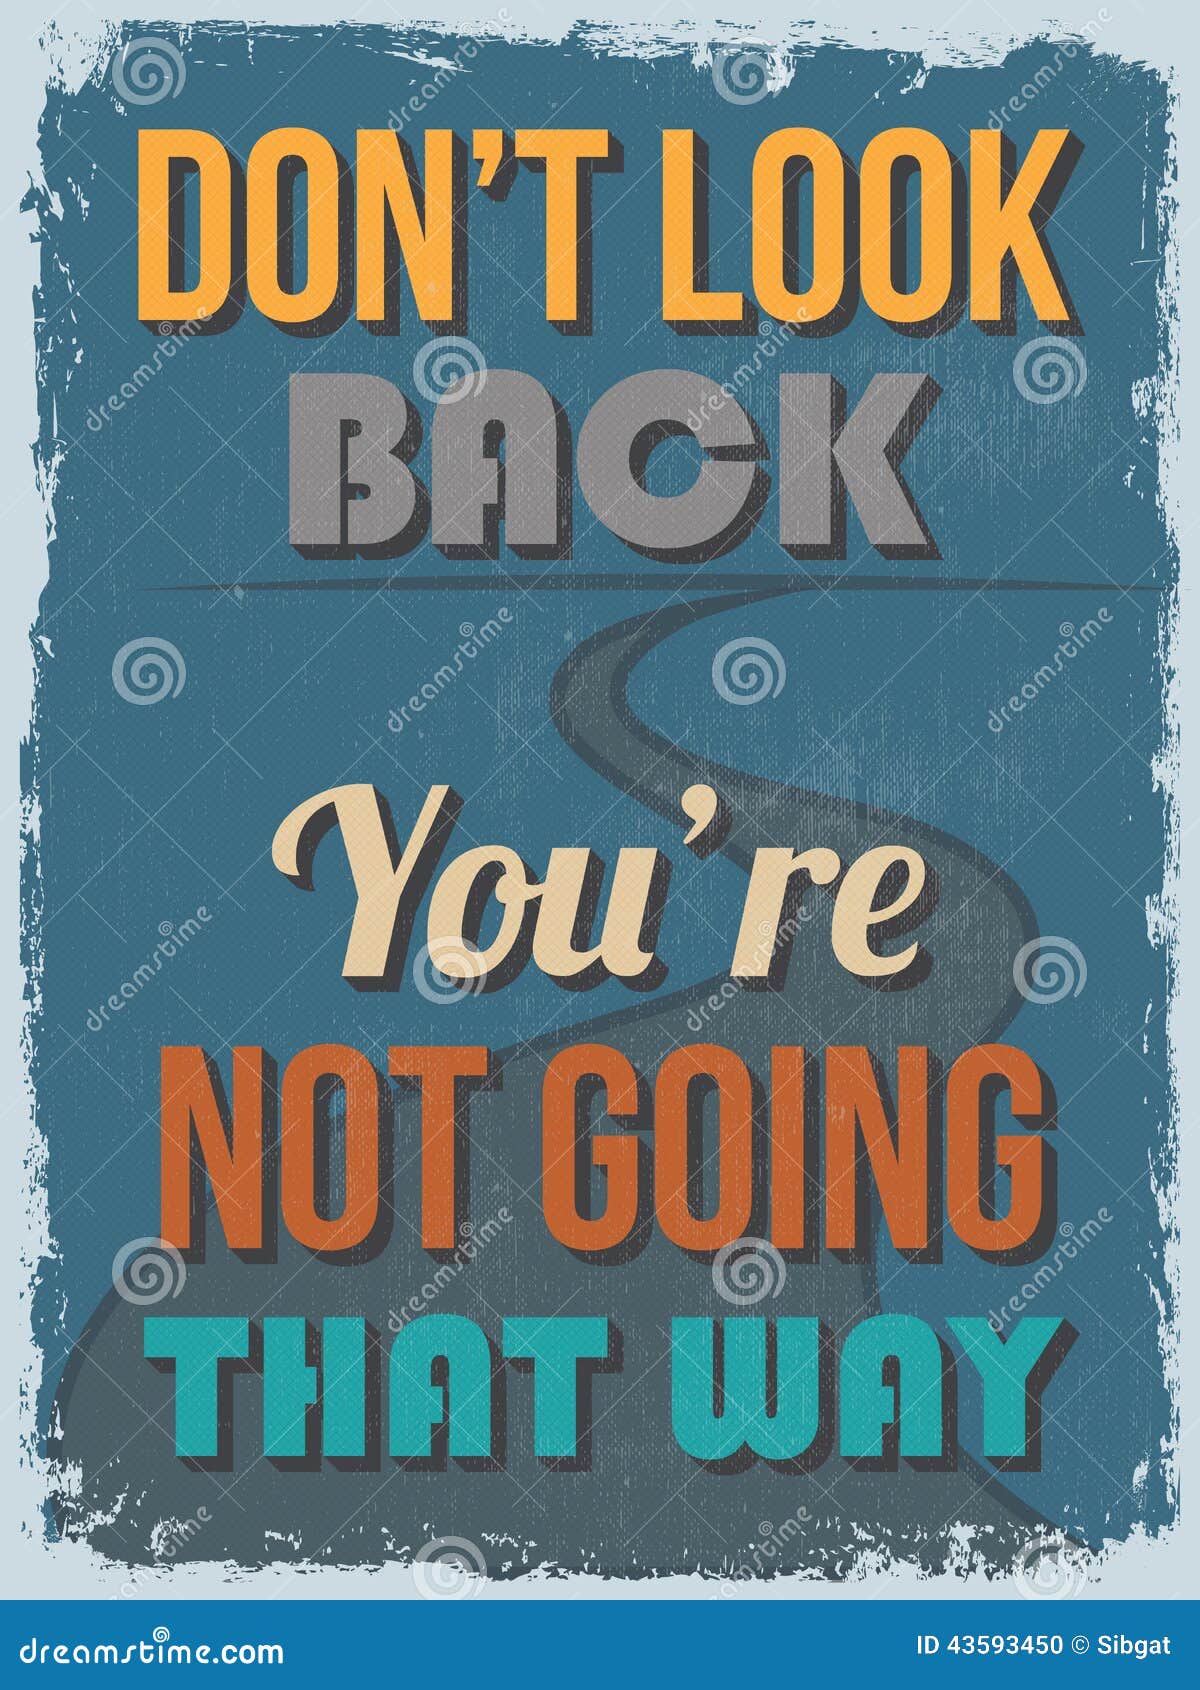 retro vintage motivational quote poster.  il